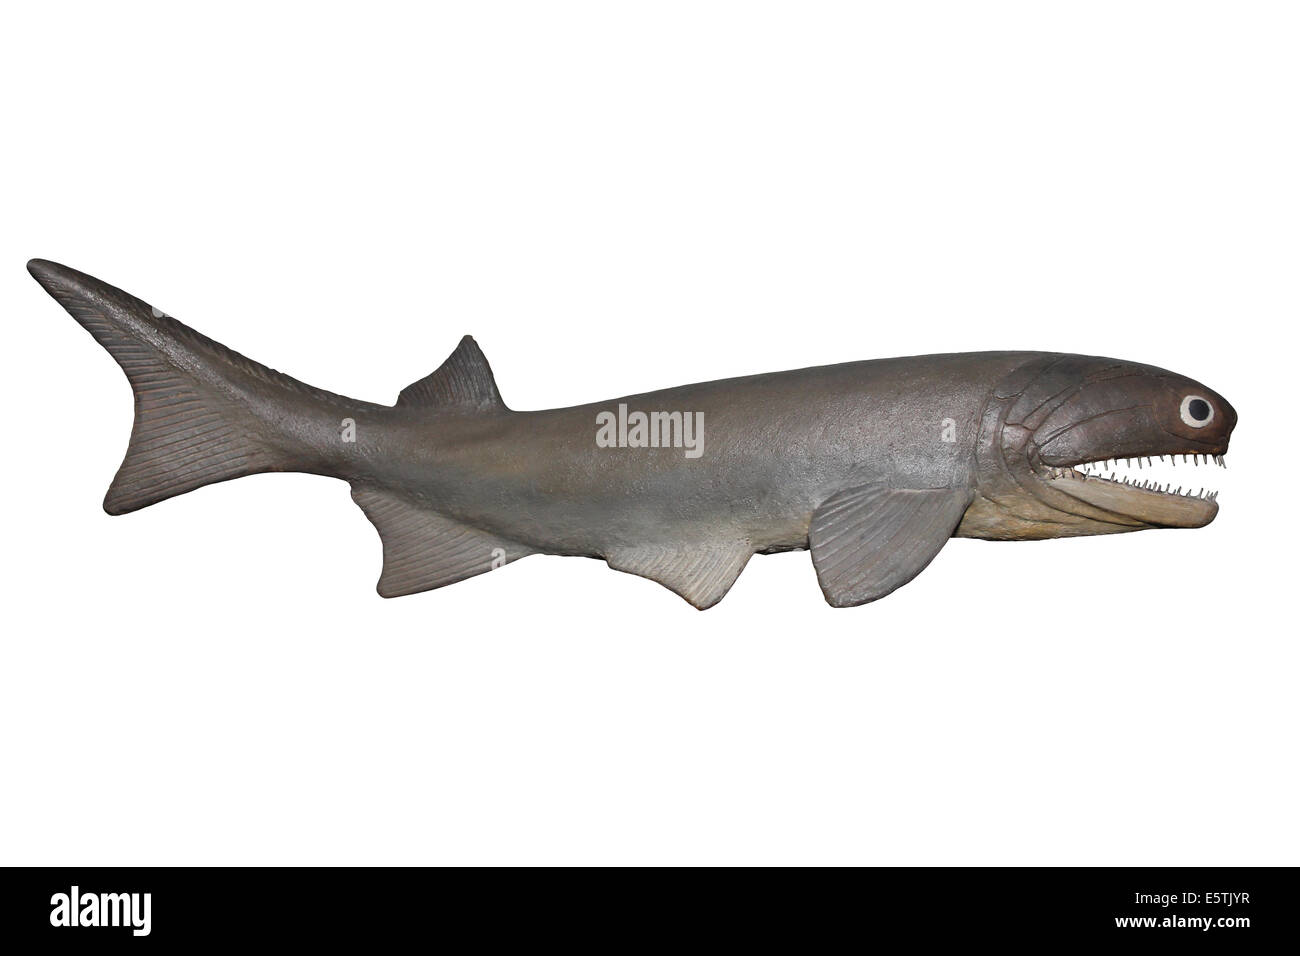 Modell der Cheirolepis Trailli, eine ausgestorbene Ray-finned Fisch, dass lebte In The Devon Periode von Europa und Nordamerika Stockfoto